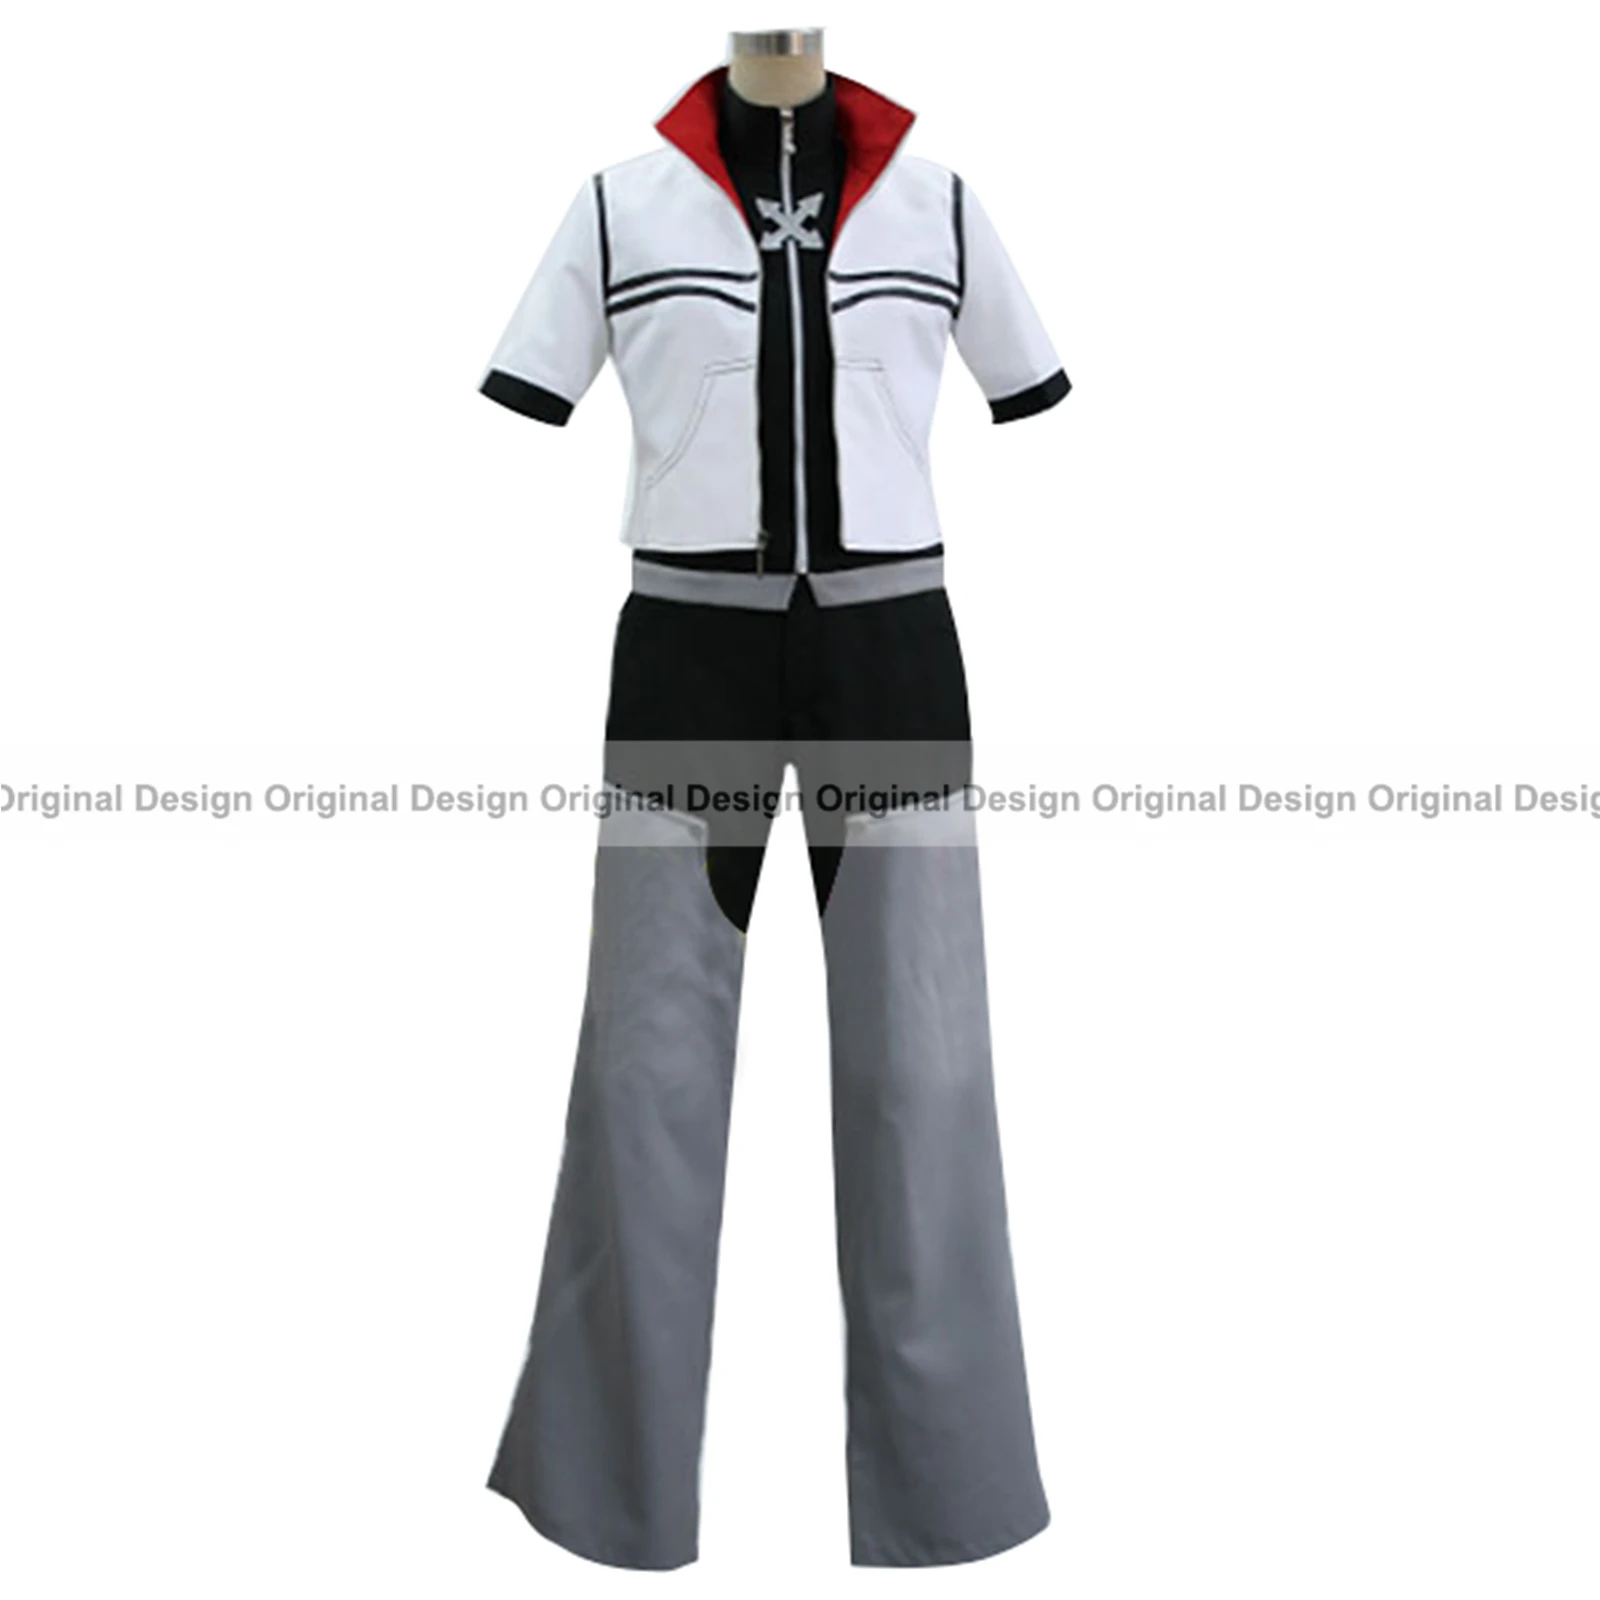 Kingdom Hearts ROXAS Riku True Sora Kairi группа костюмы персонажей аниме одежда, костюм для костюмированной игры, возможно индивидуальное изготовление на заказ - Цвет: Design 09